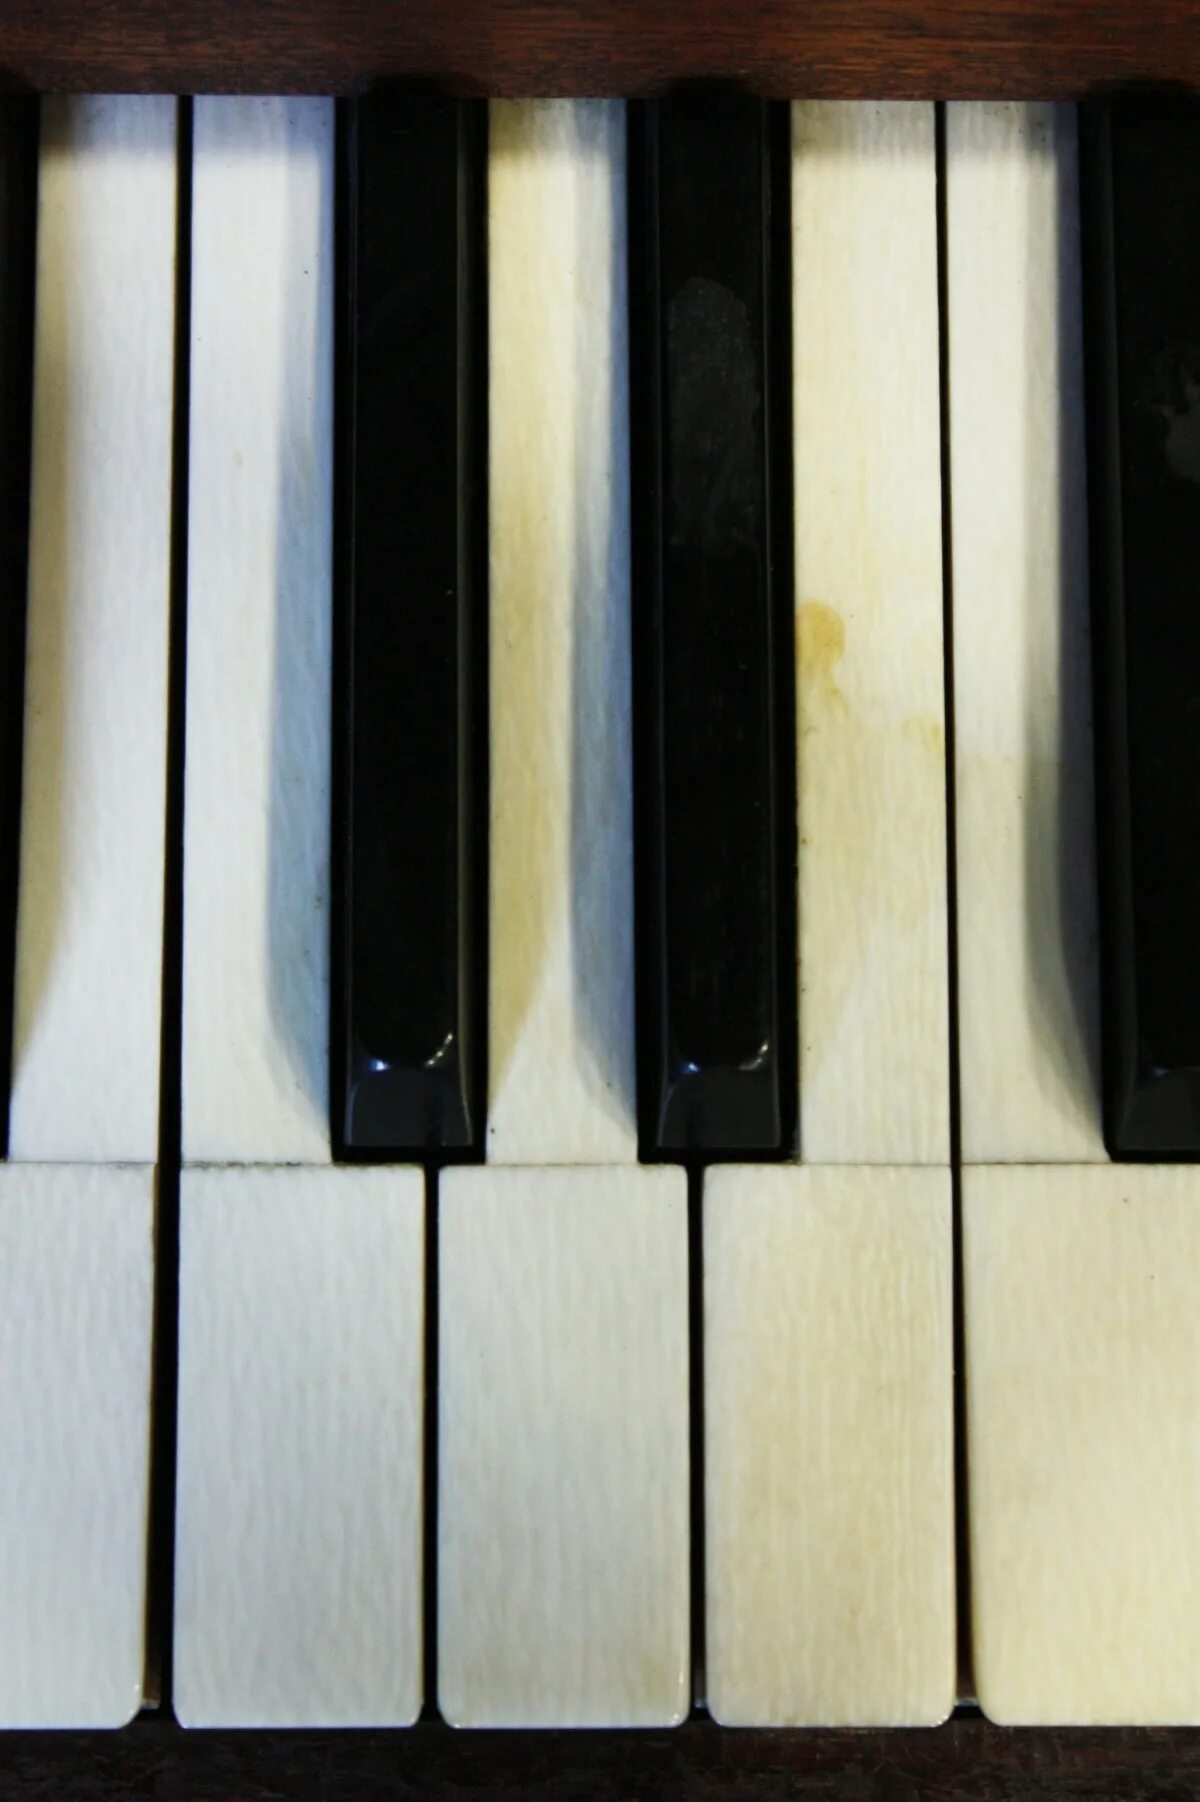 Piano sounds. Клавиши пианино. Клавиатура пианино. Фортепианные клавиши. Клавиатура рояля.